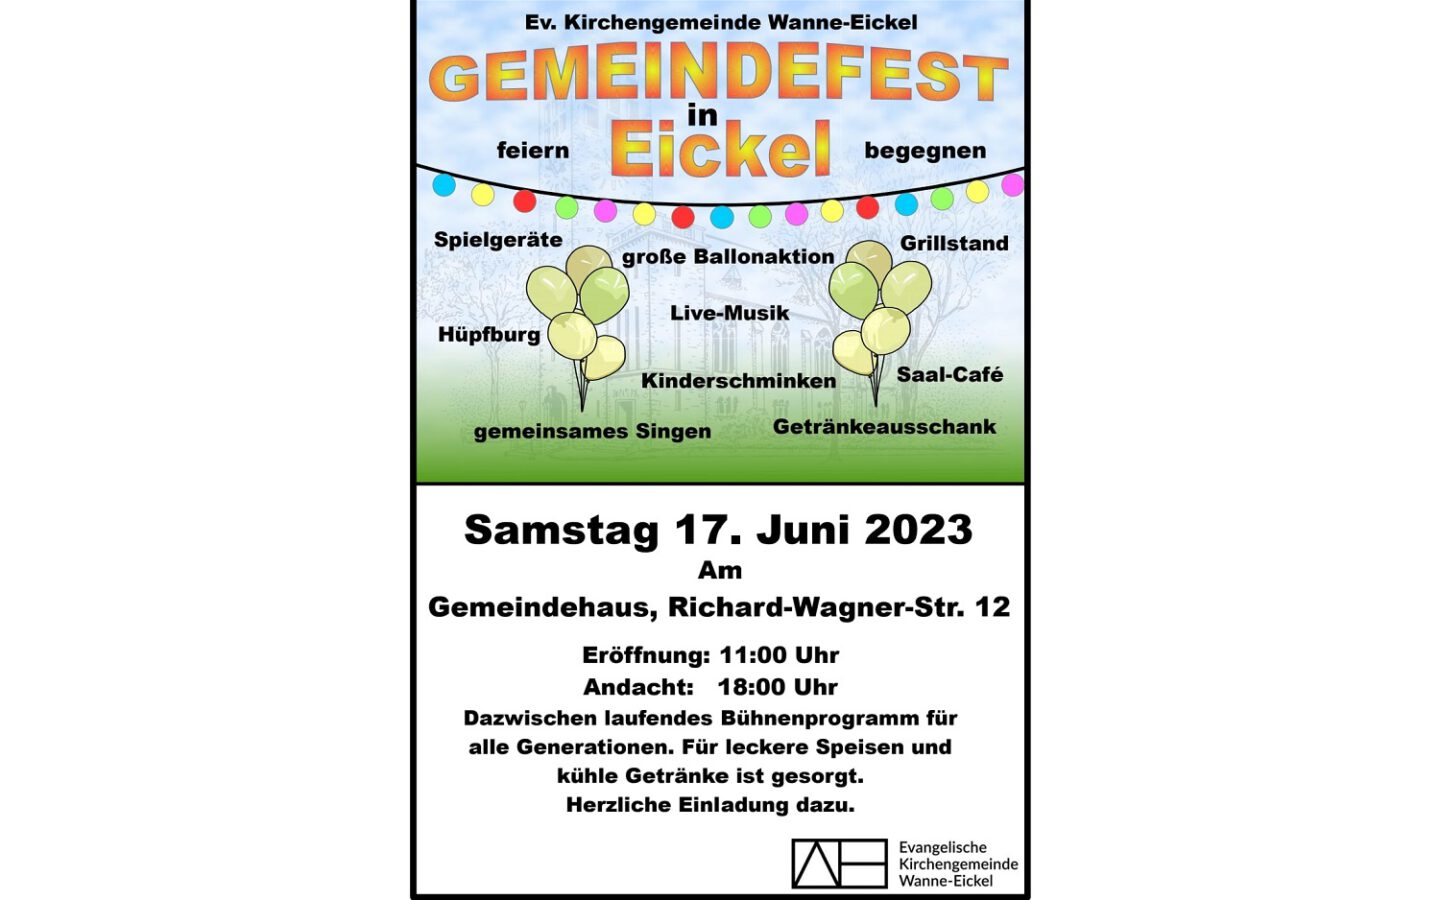 17.06.2023: Gemeindefest in Eickel